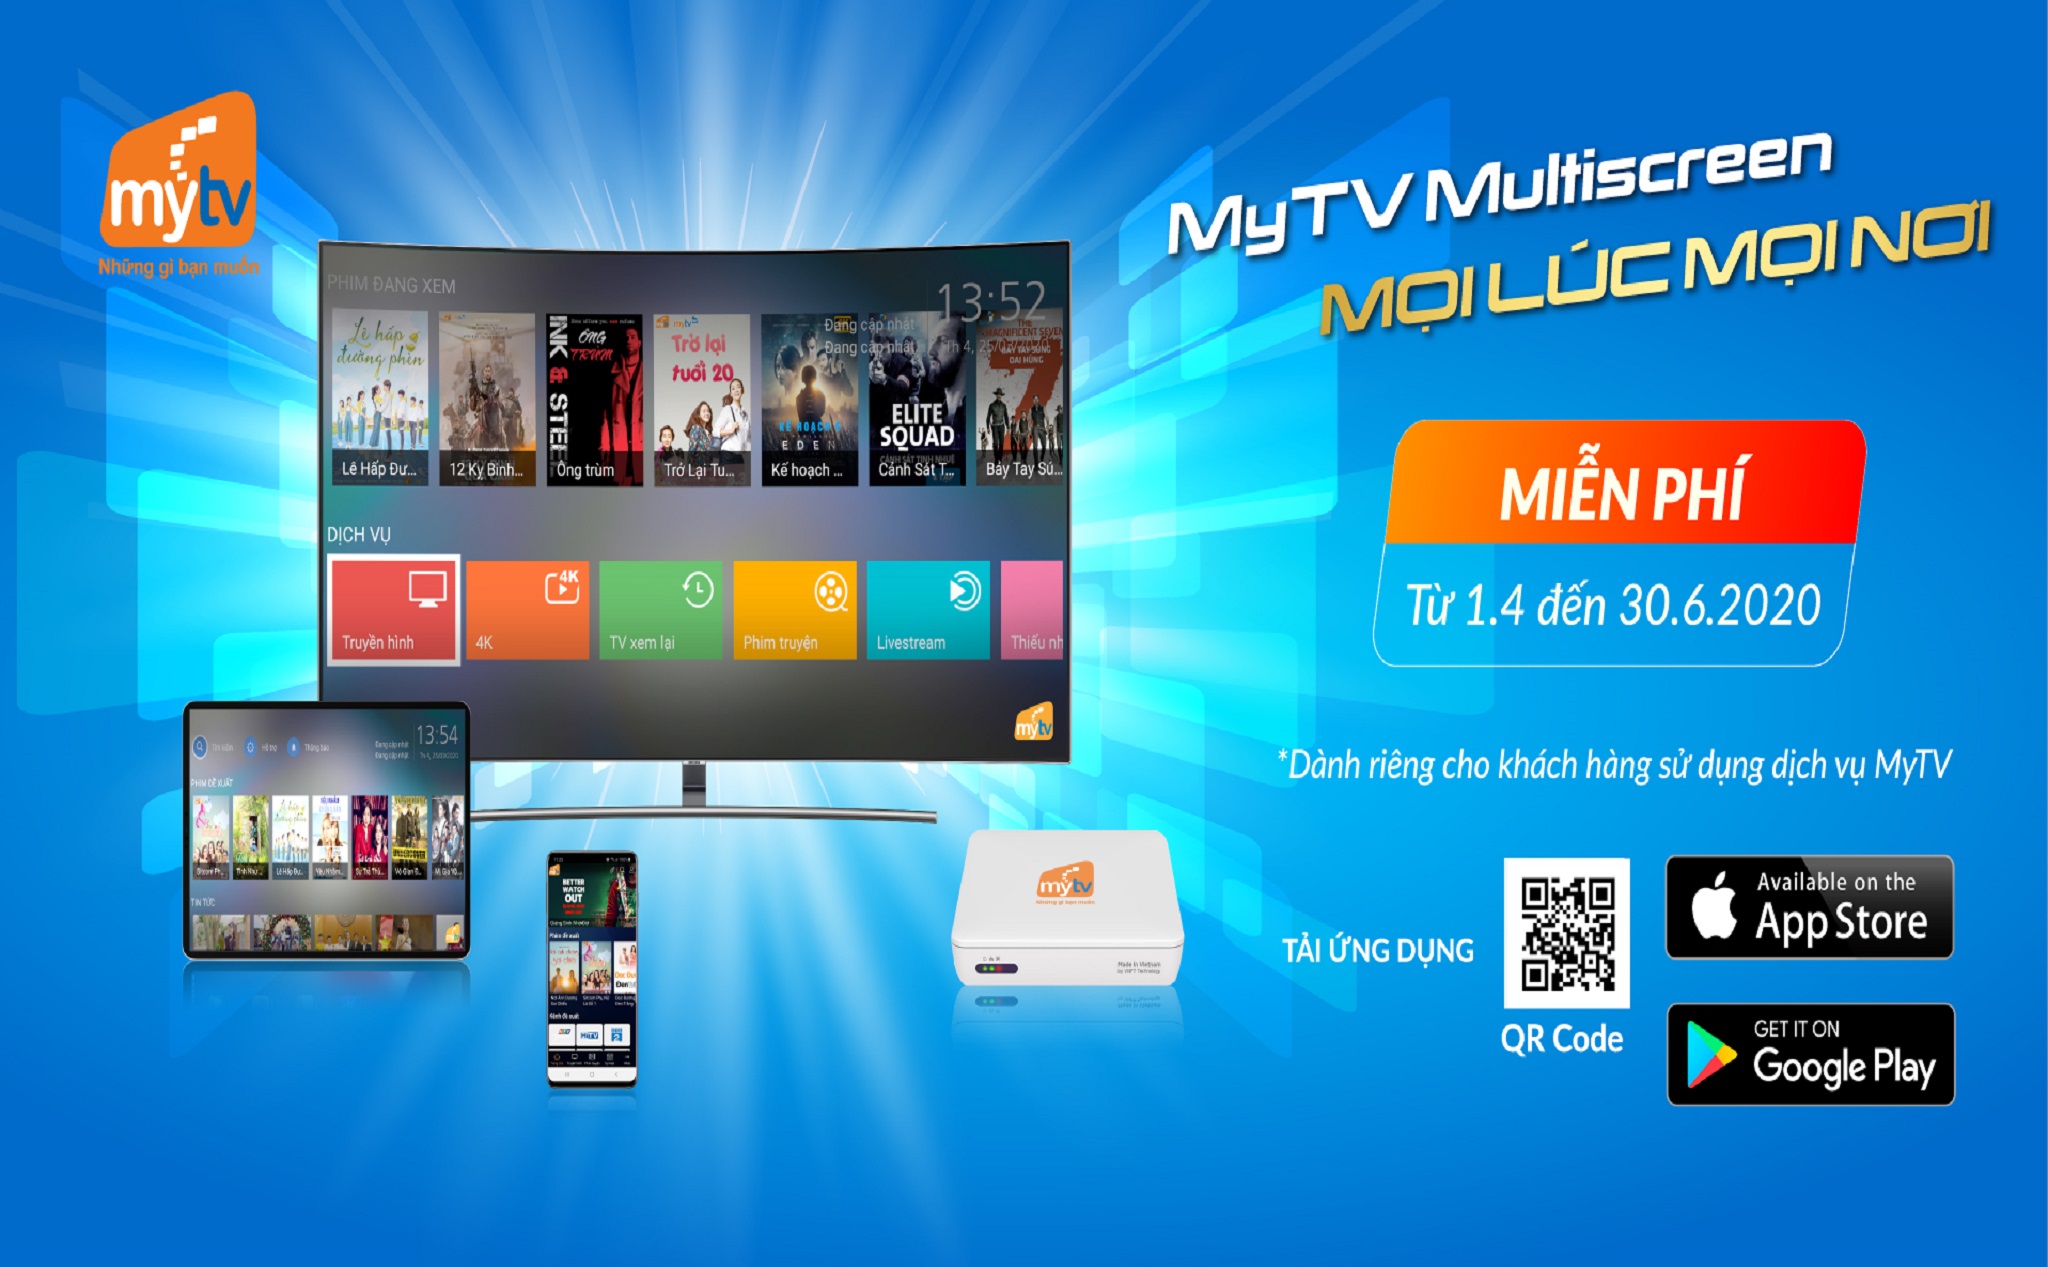 [QC] MyTV Multiscreen - Tính năng đa màn hình hoàn hảo thời truyền hình công nghệ lên ngôi